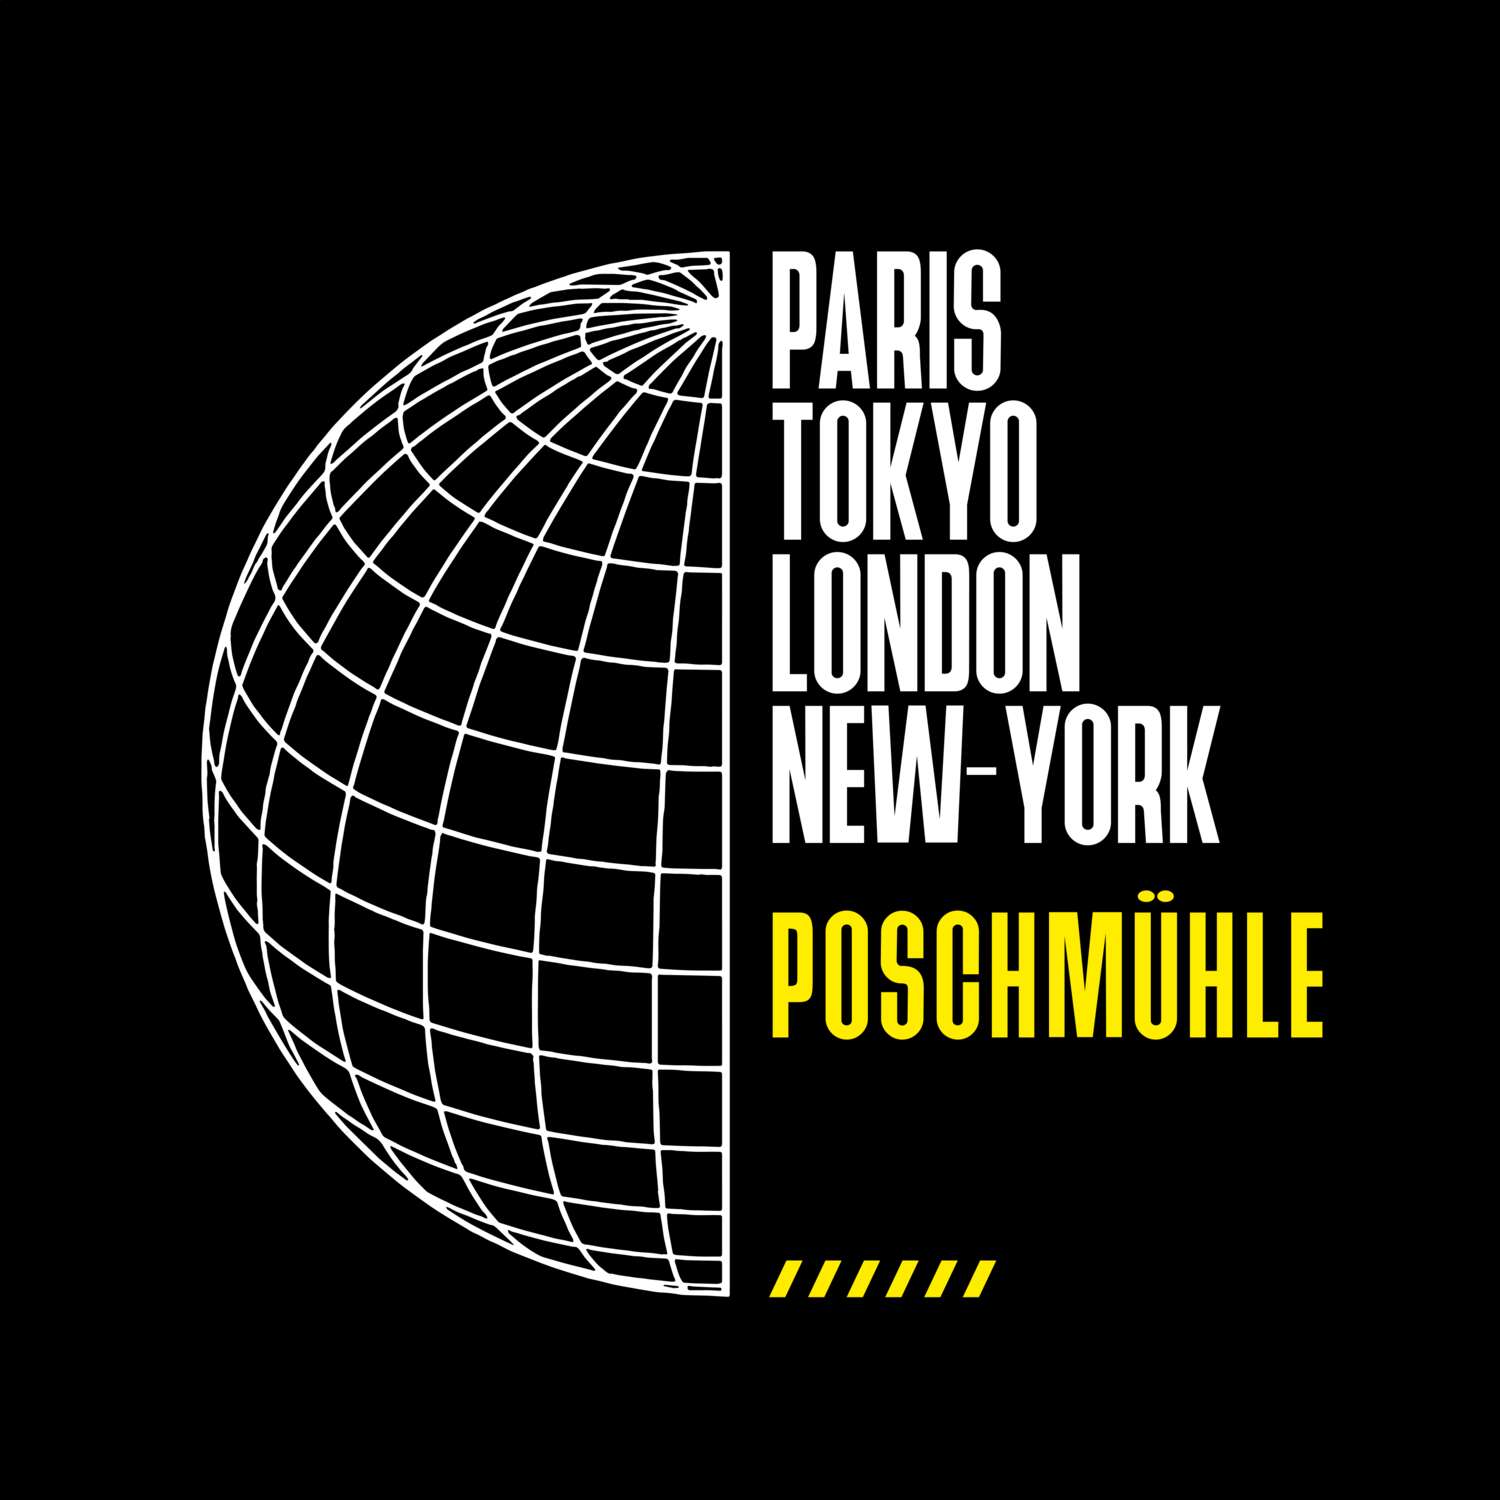 Poschmühle T-Shirt »Paris Tokyo London«